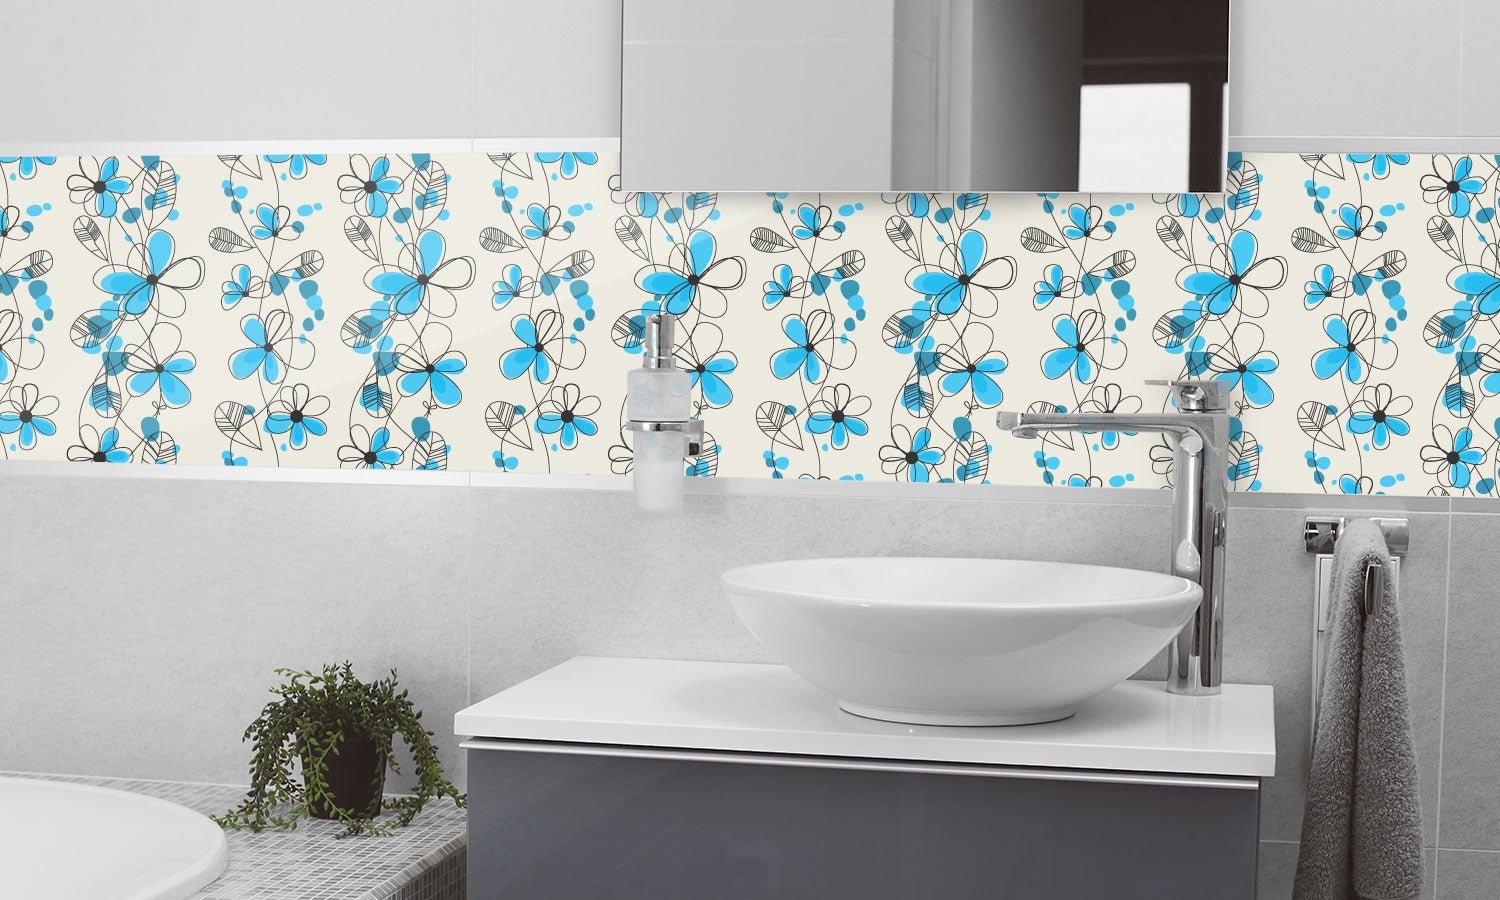 Kuhinjski paneli Seamless vintage floral pattern - Pleksi steklo - s tiskom za kuhinjo, Stenske obloge PKU0345